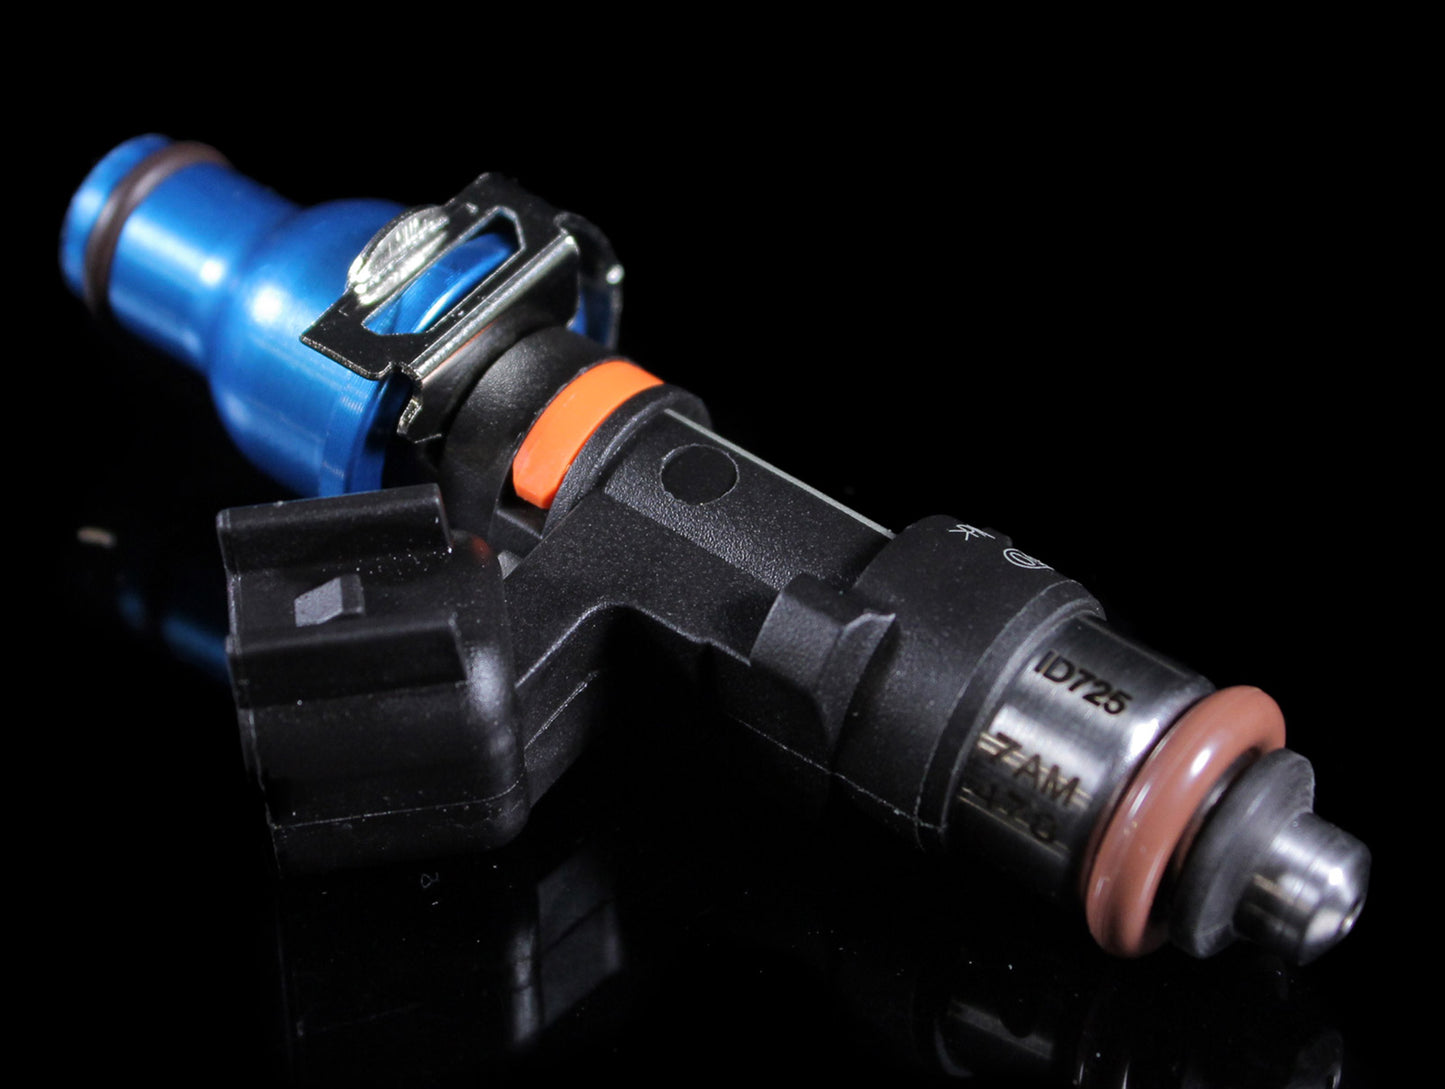 Injector Dynamics Fuel Injector Kits - Subaru (WRX/STi/BRZ)